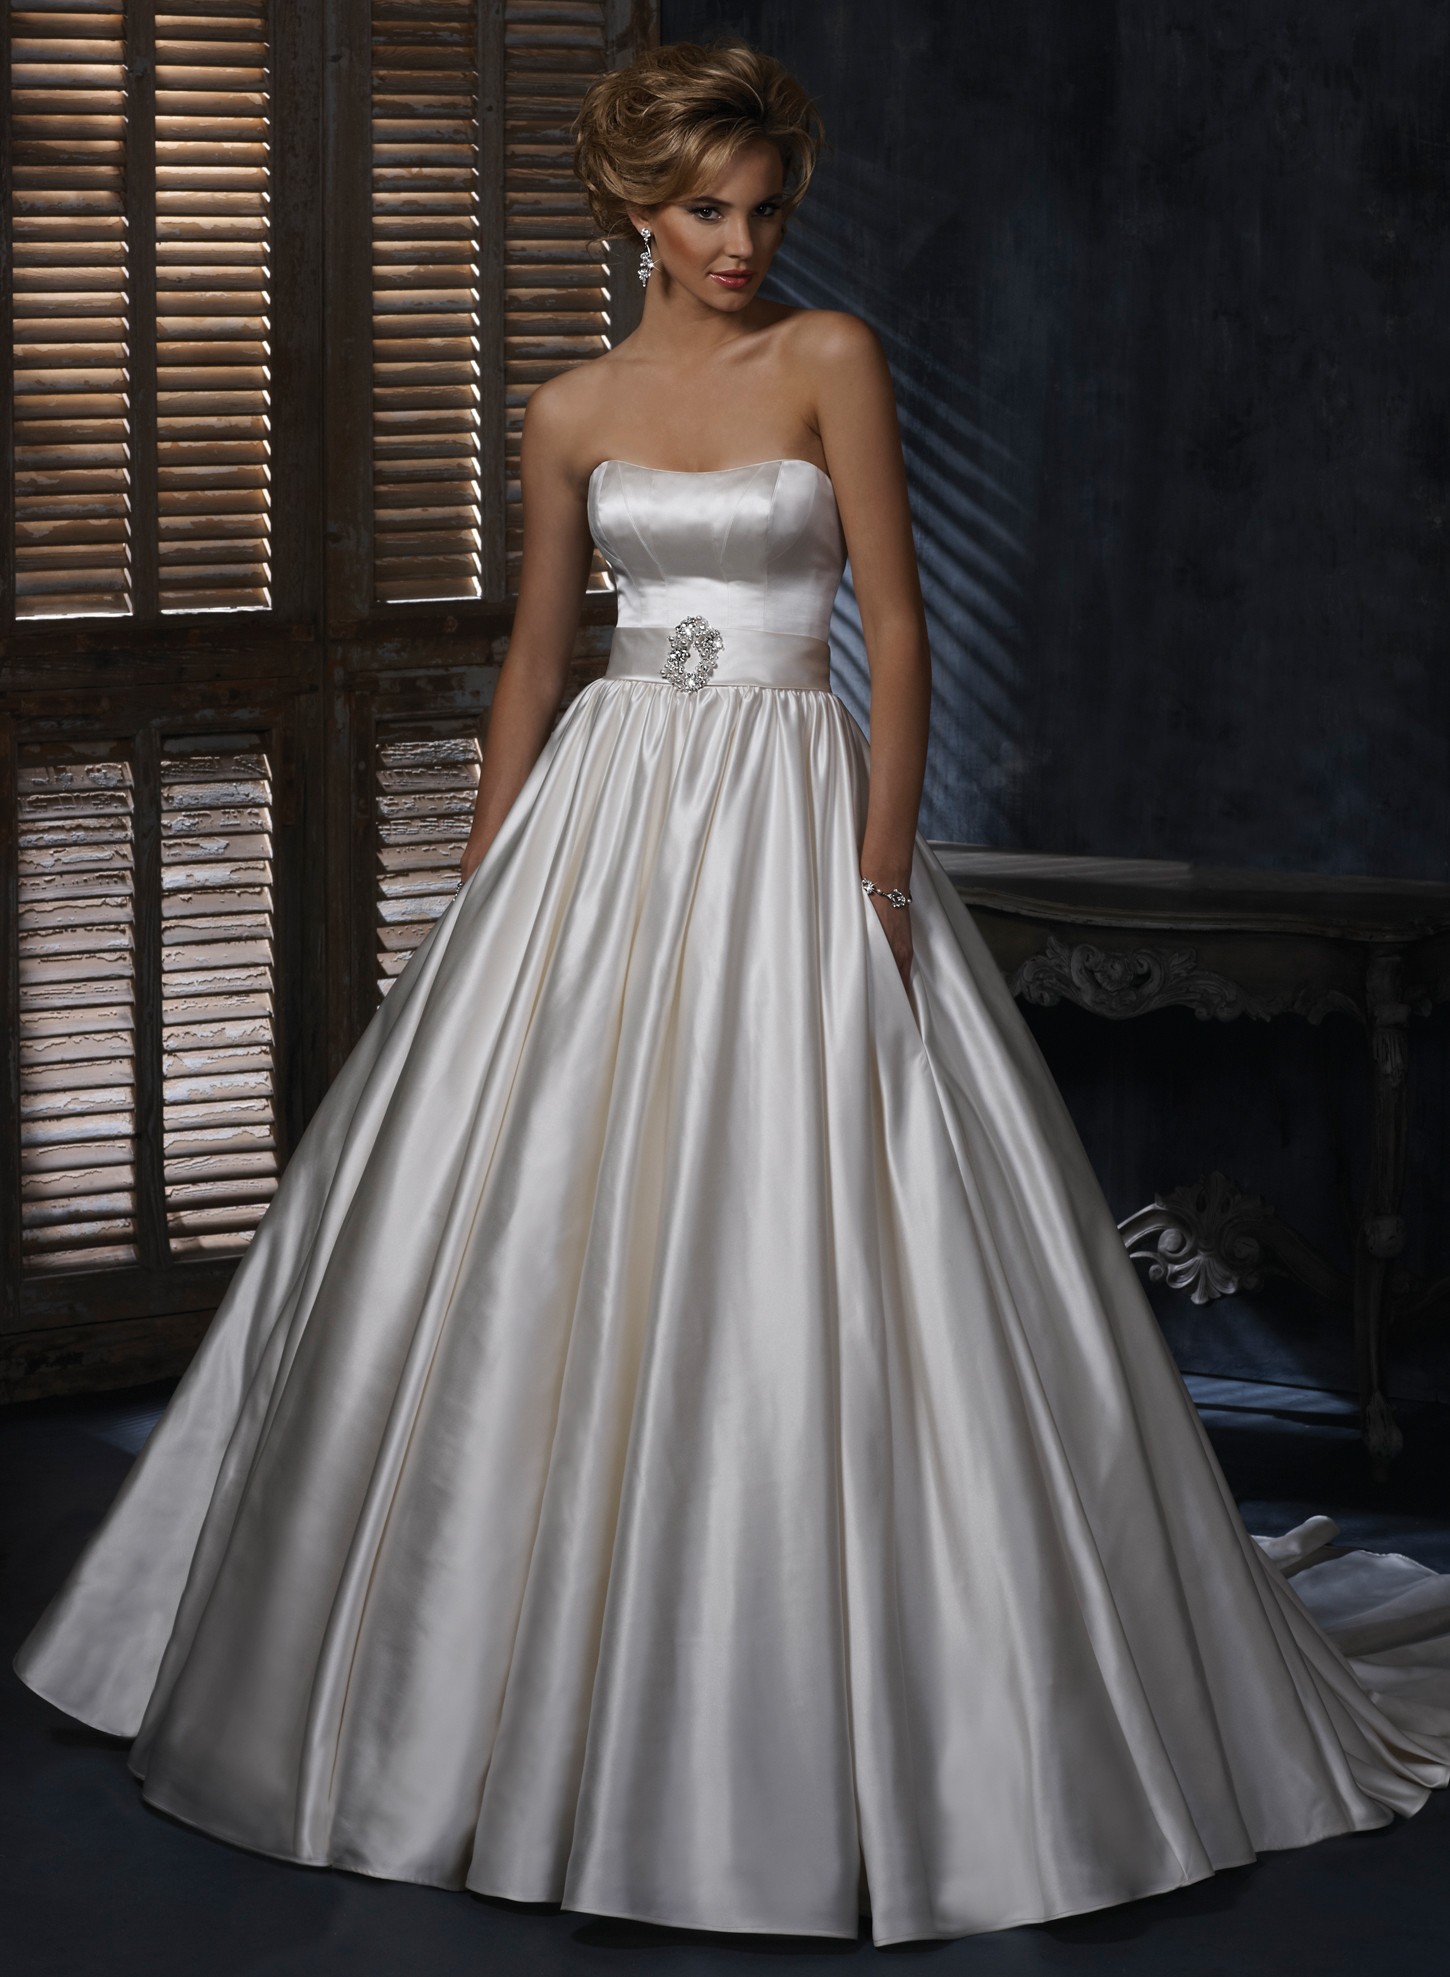 25 Ball Gown Wedding Dresses Ideas Wohh Wedding 3187